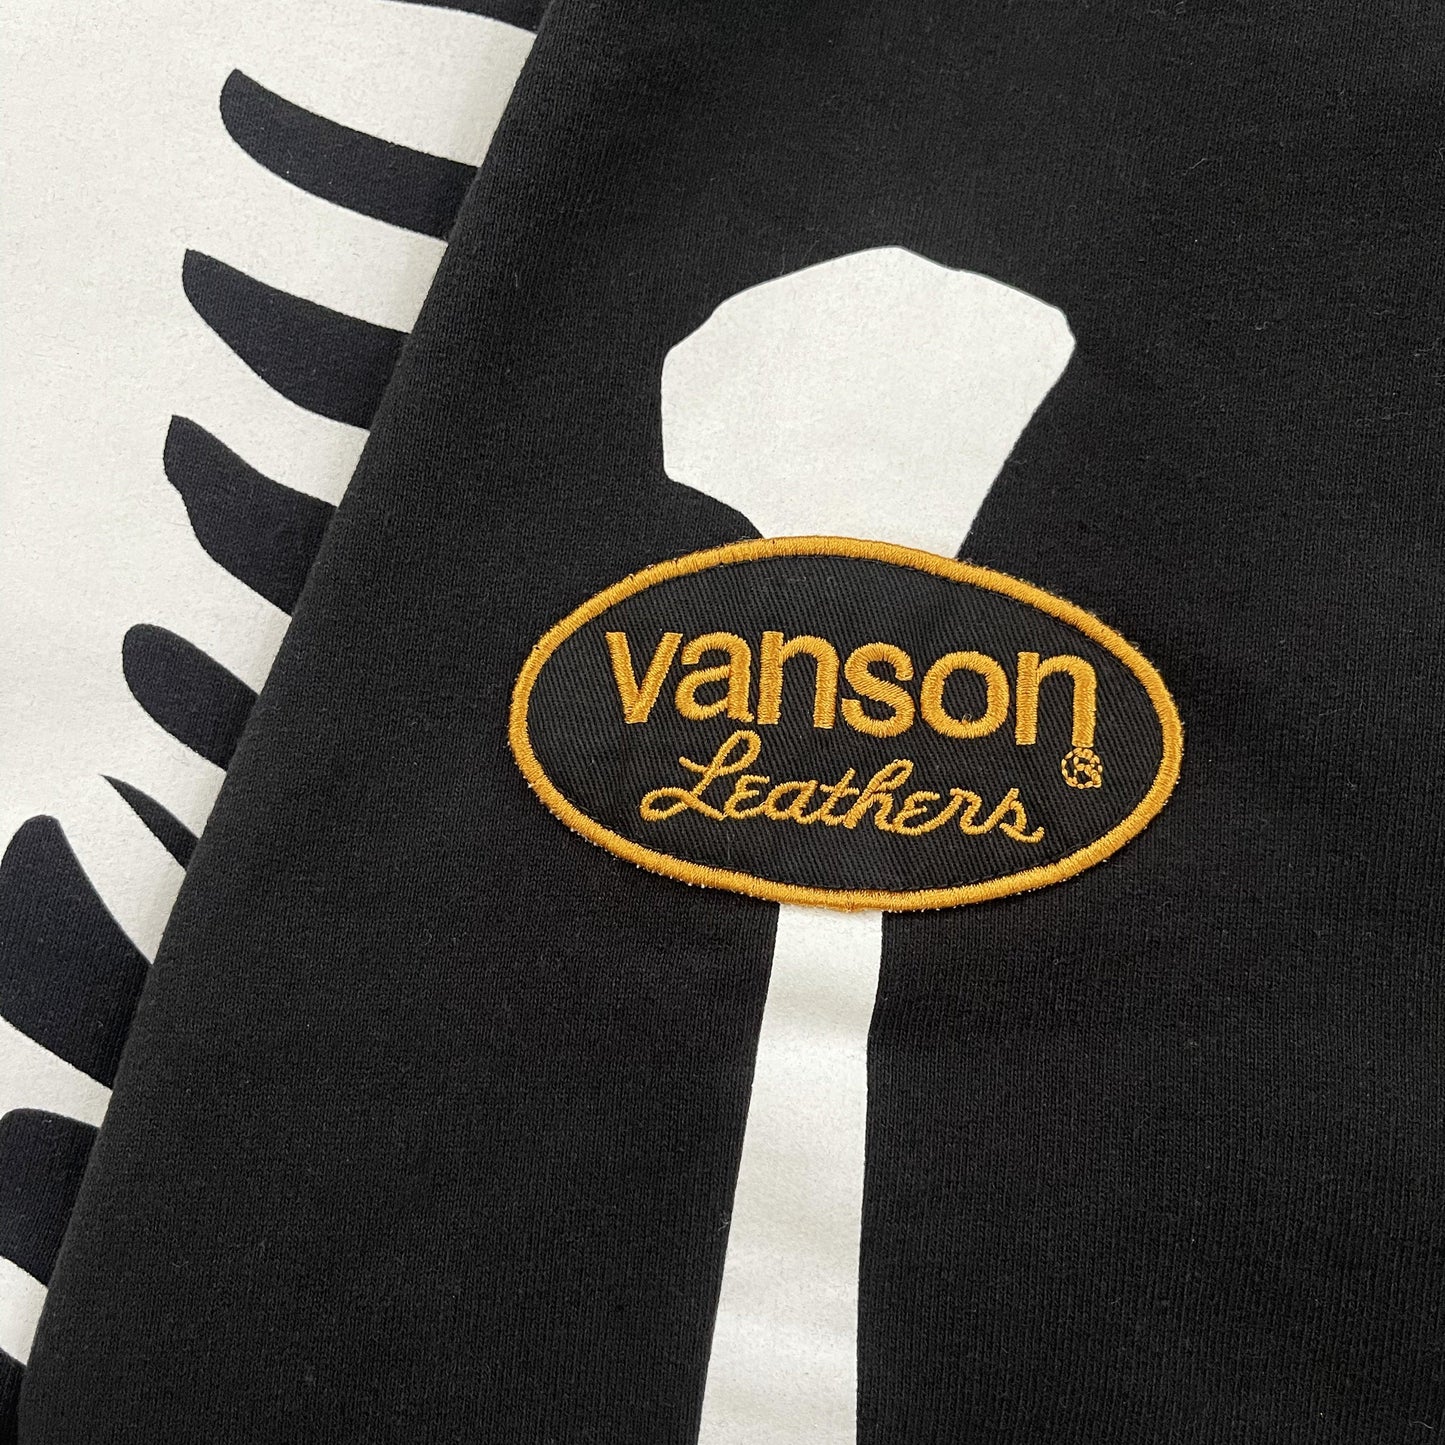 Vanson Leathers Skeleton Hoodie - Known Source